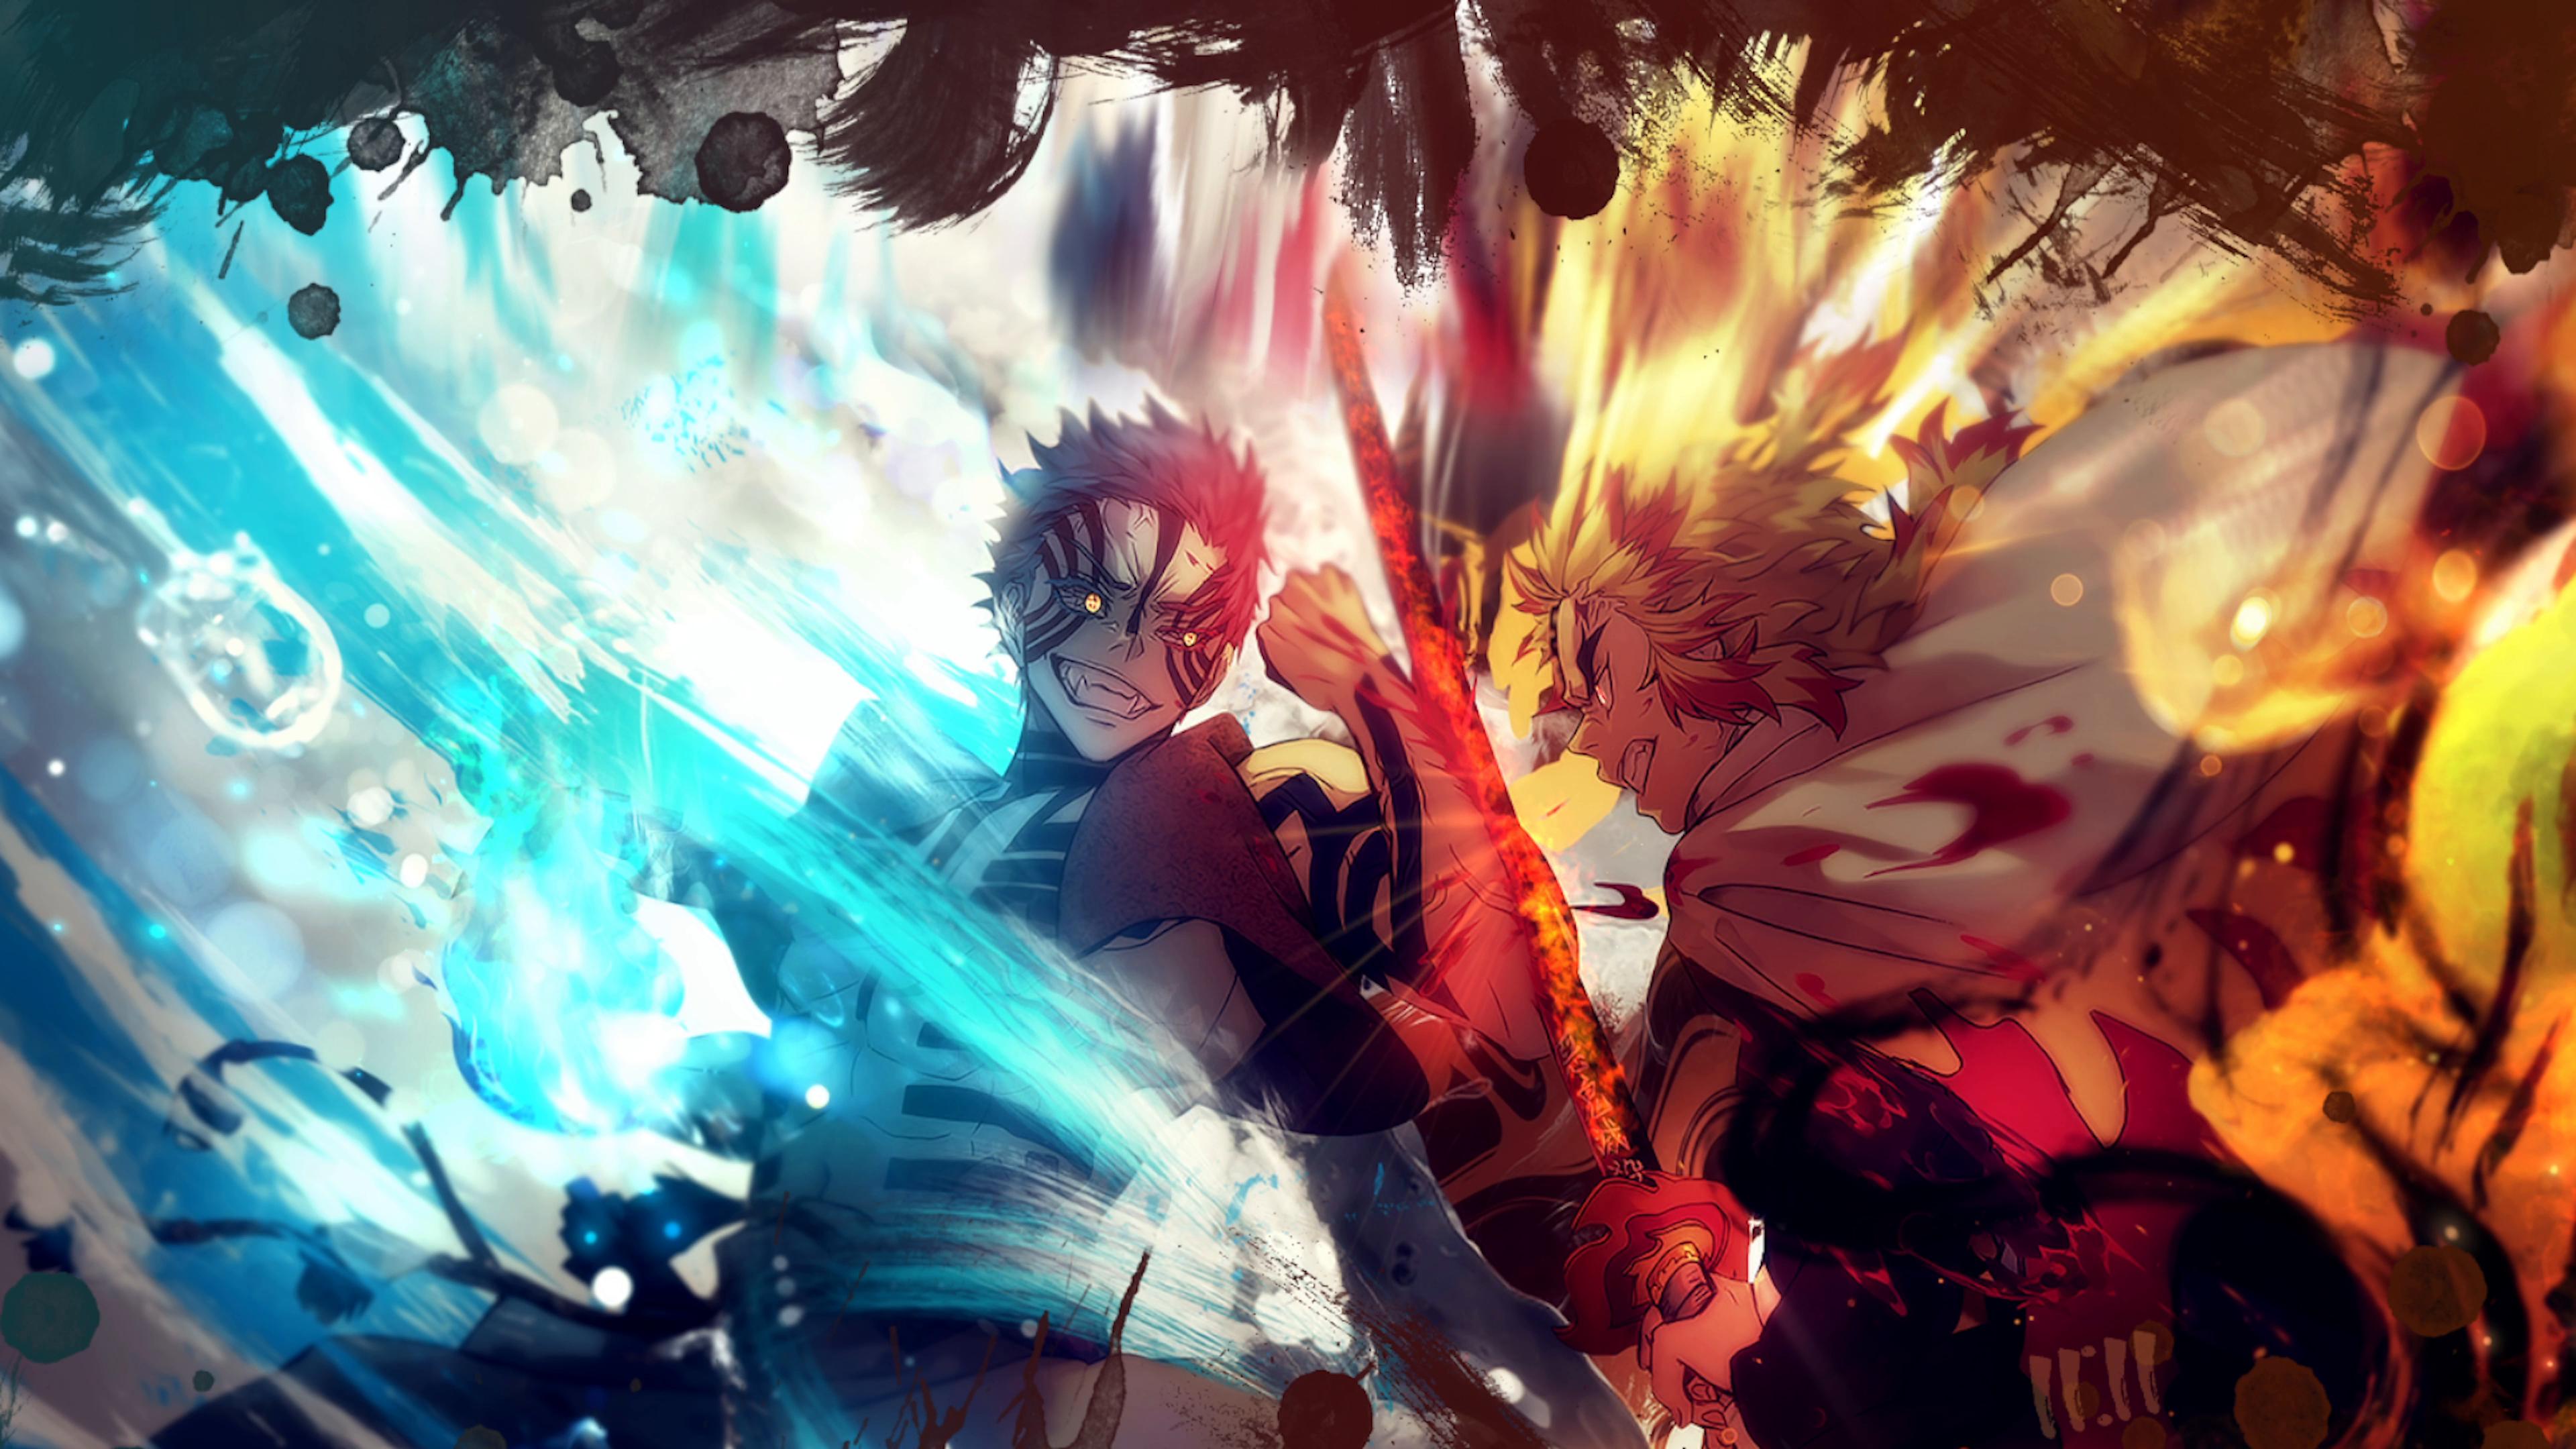 Anime Naruto And Sasuke Wallpapers - Wallpaper Cave